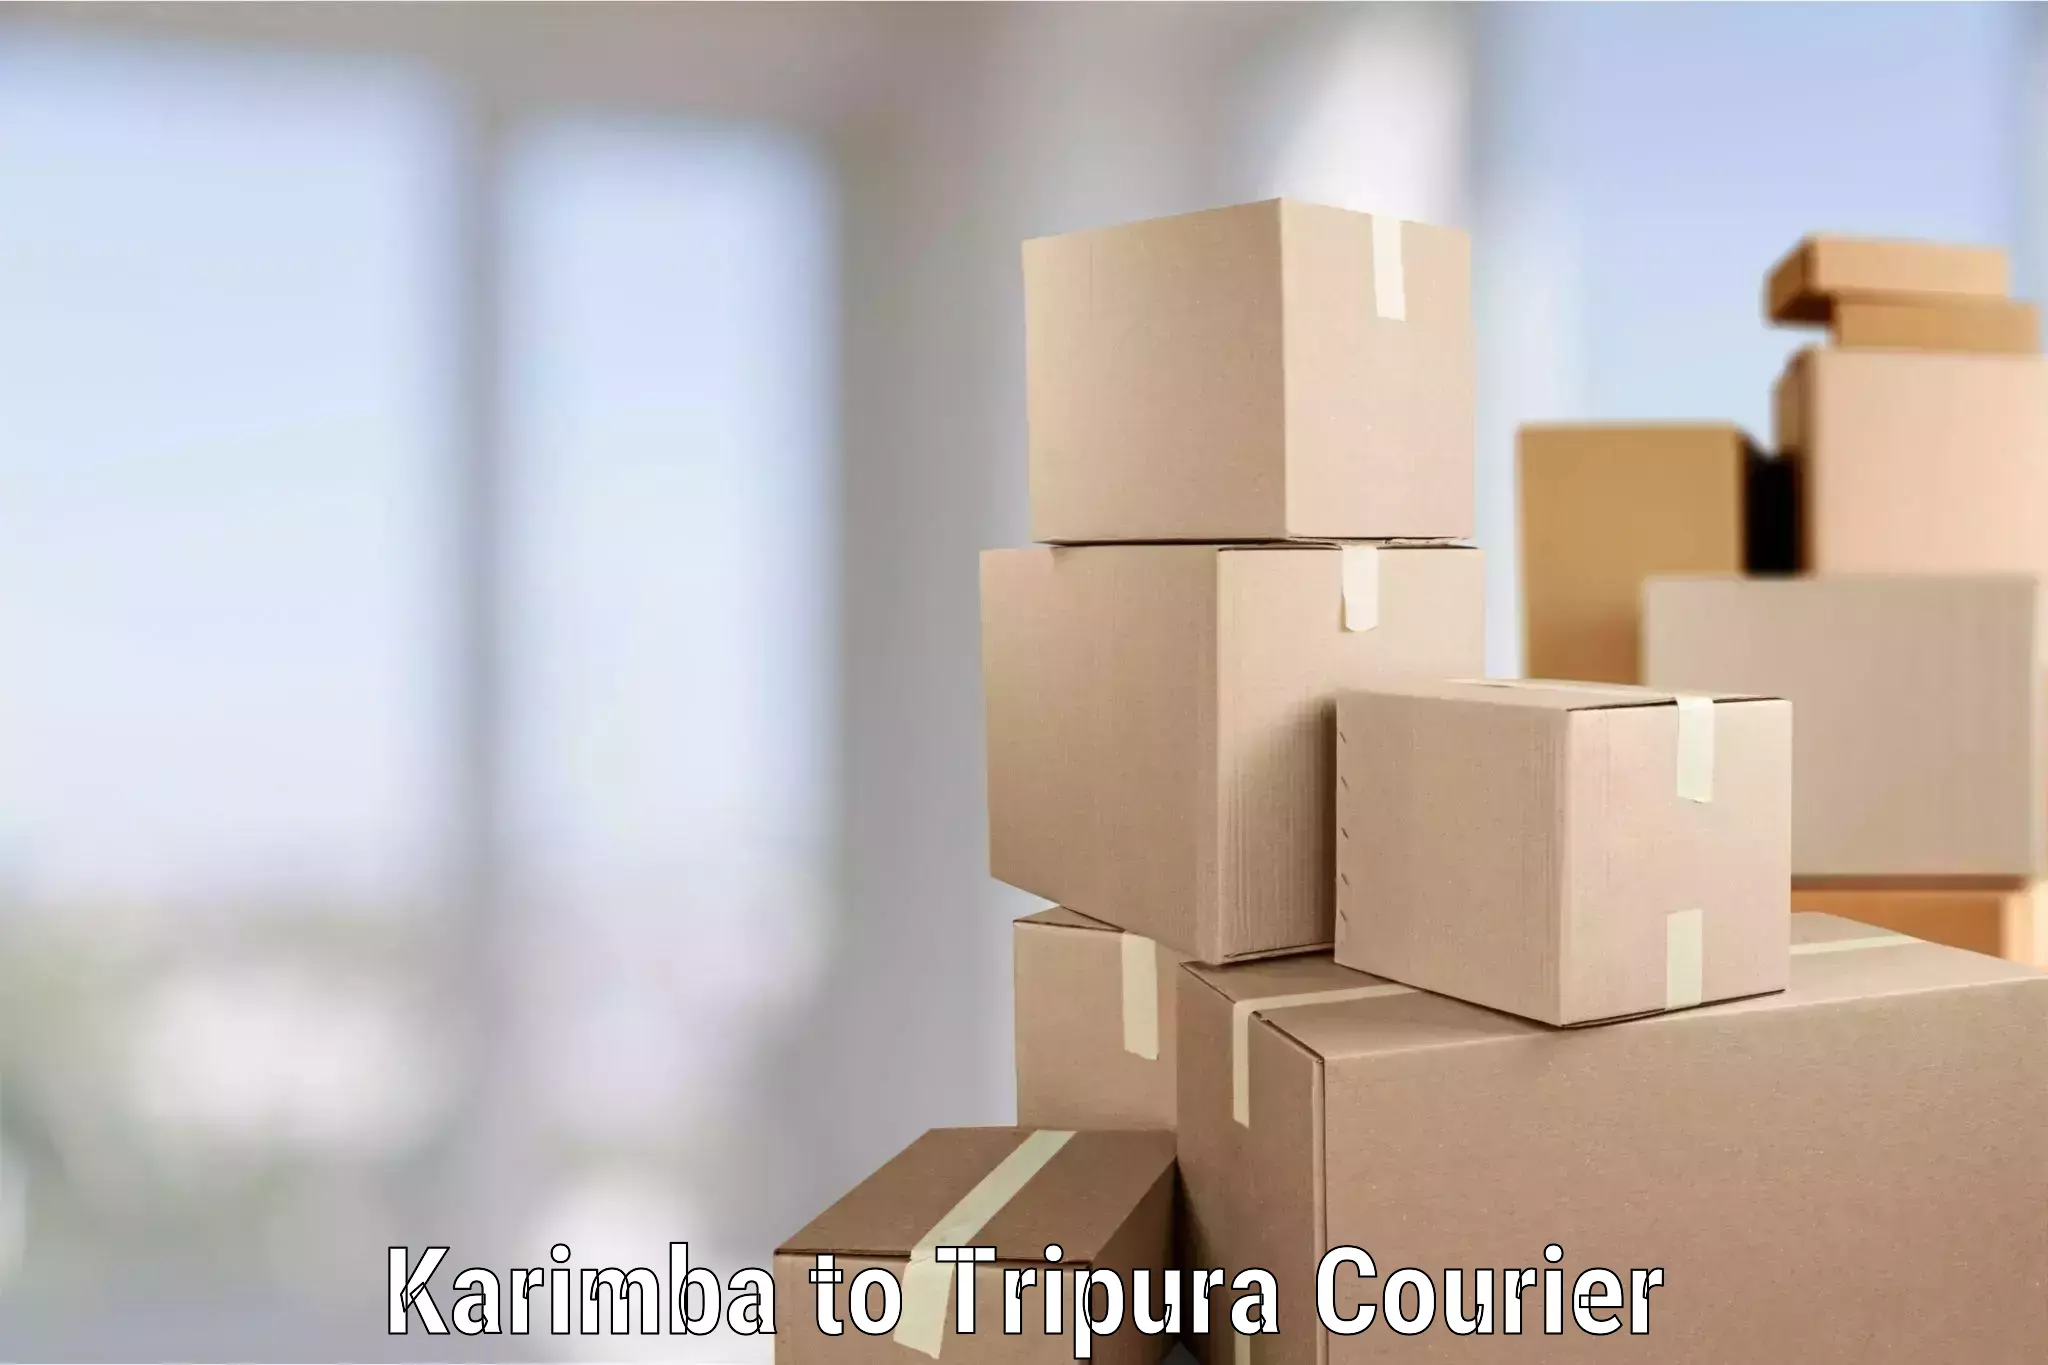 Reliable movers Karimba to Tripura